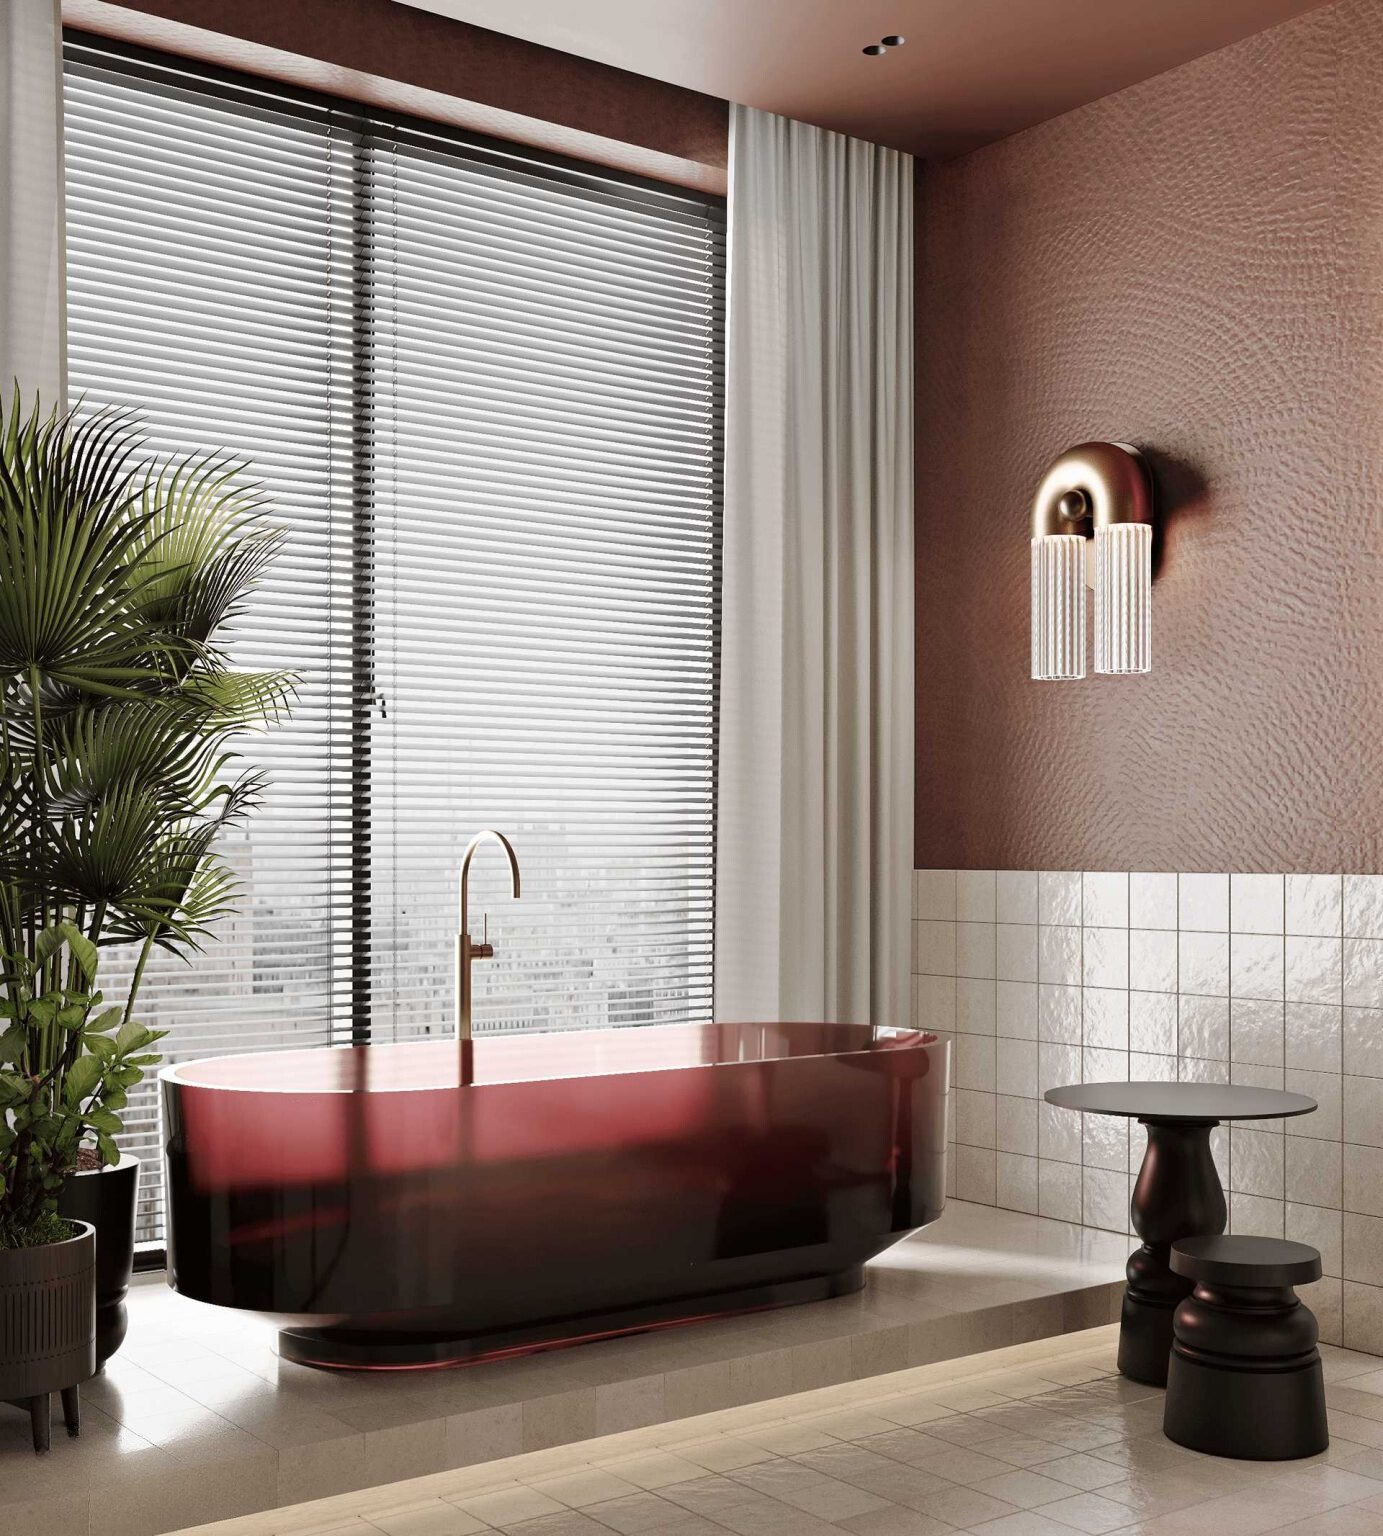 mẫu thiết kế phòng tắm luxury mang tone màu hồng pastel trang nhã, nhẹ nhàng